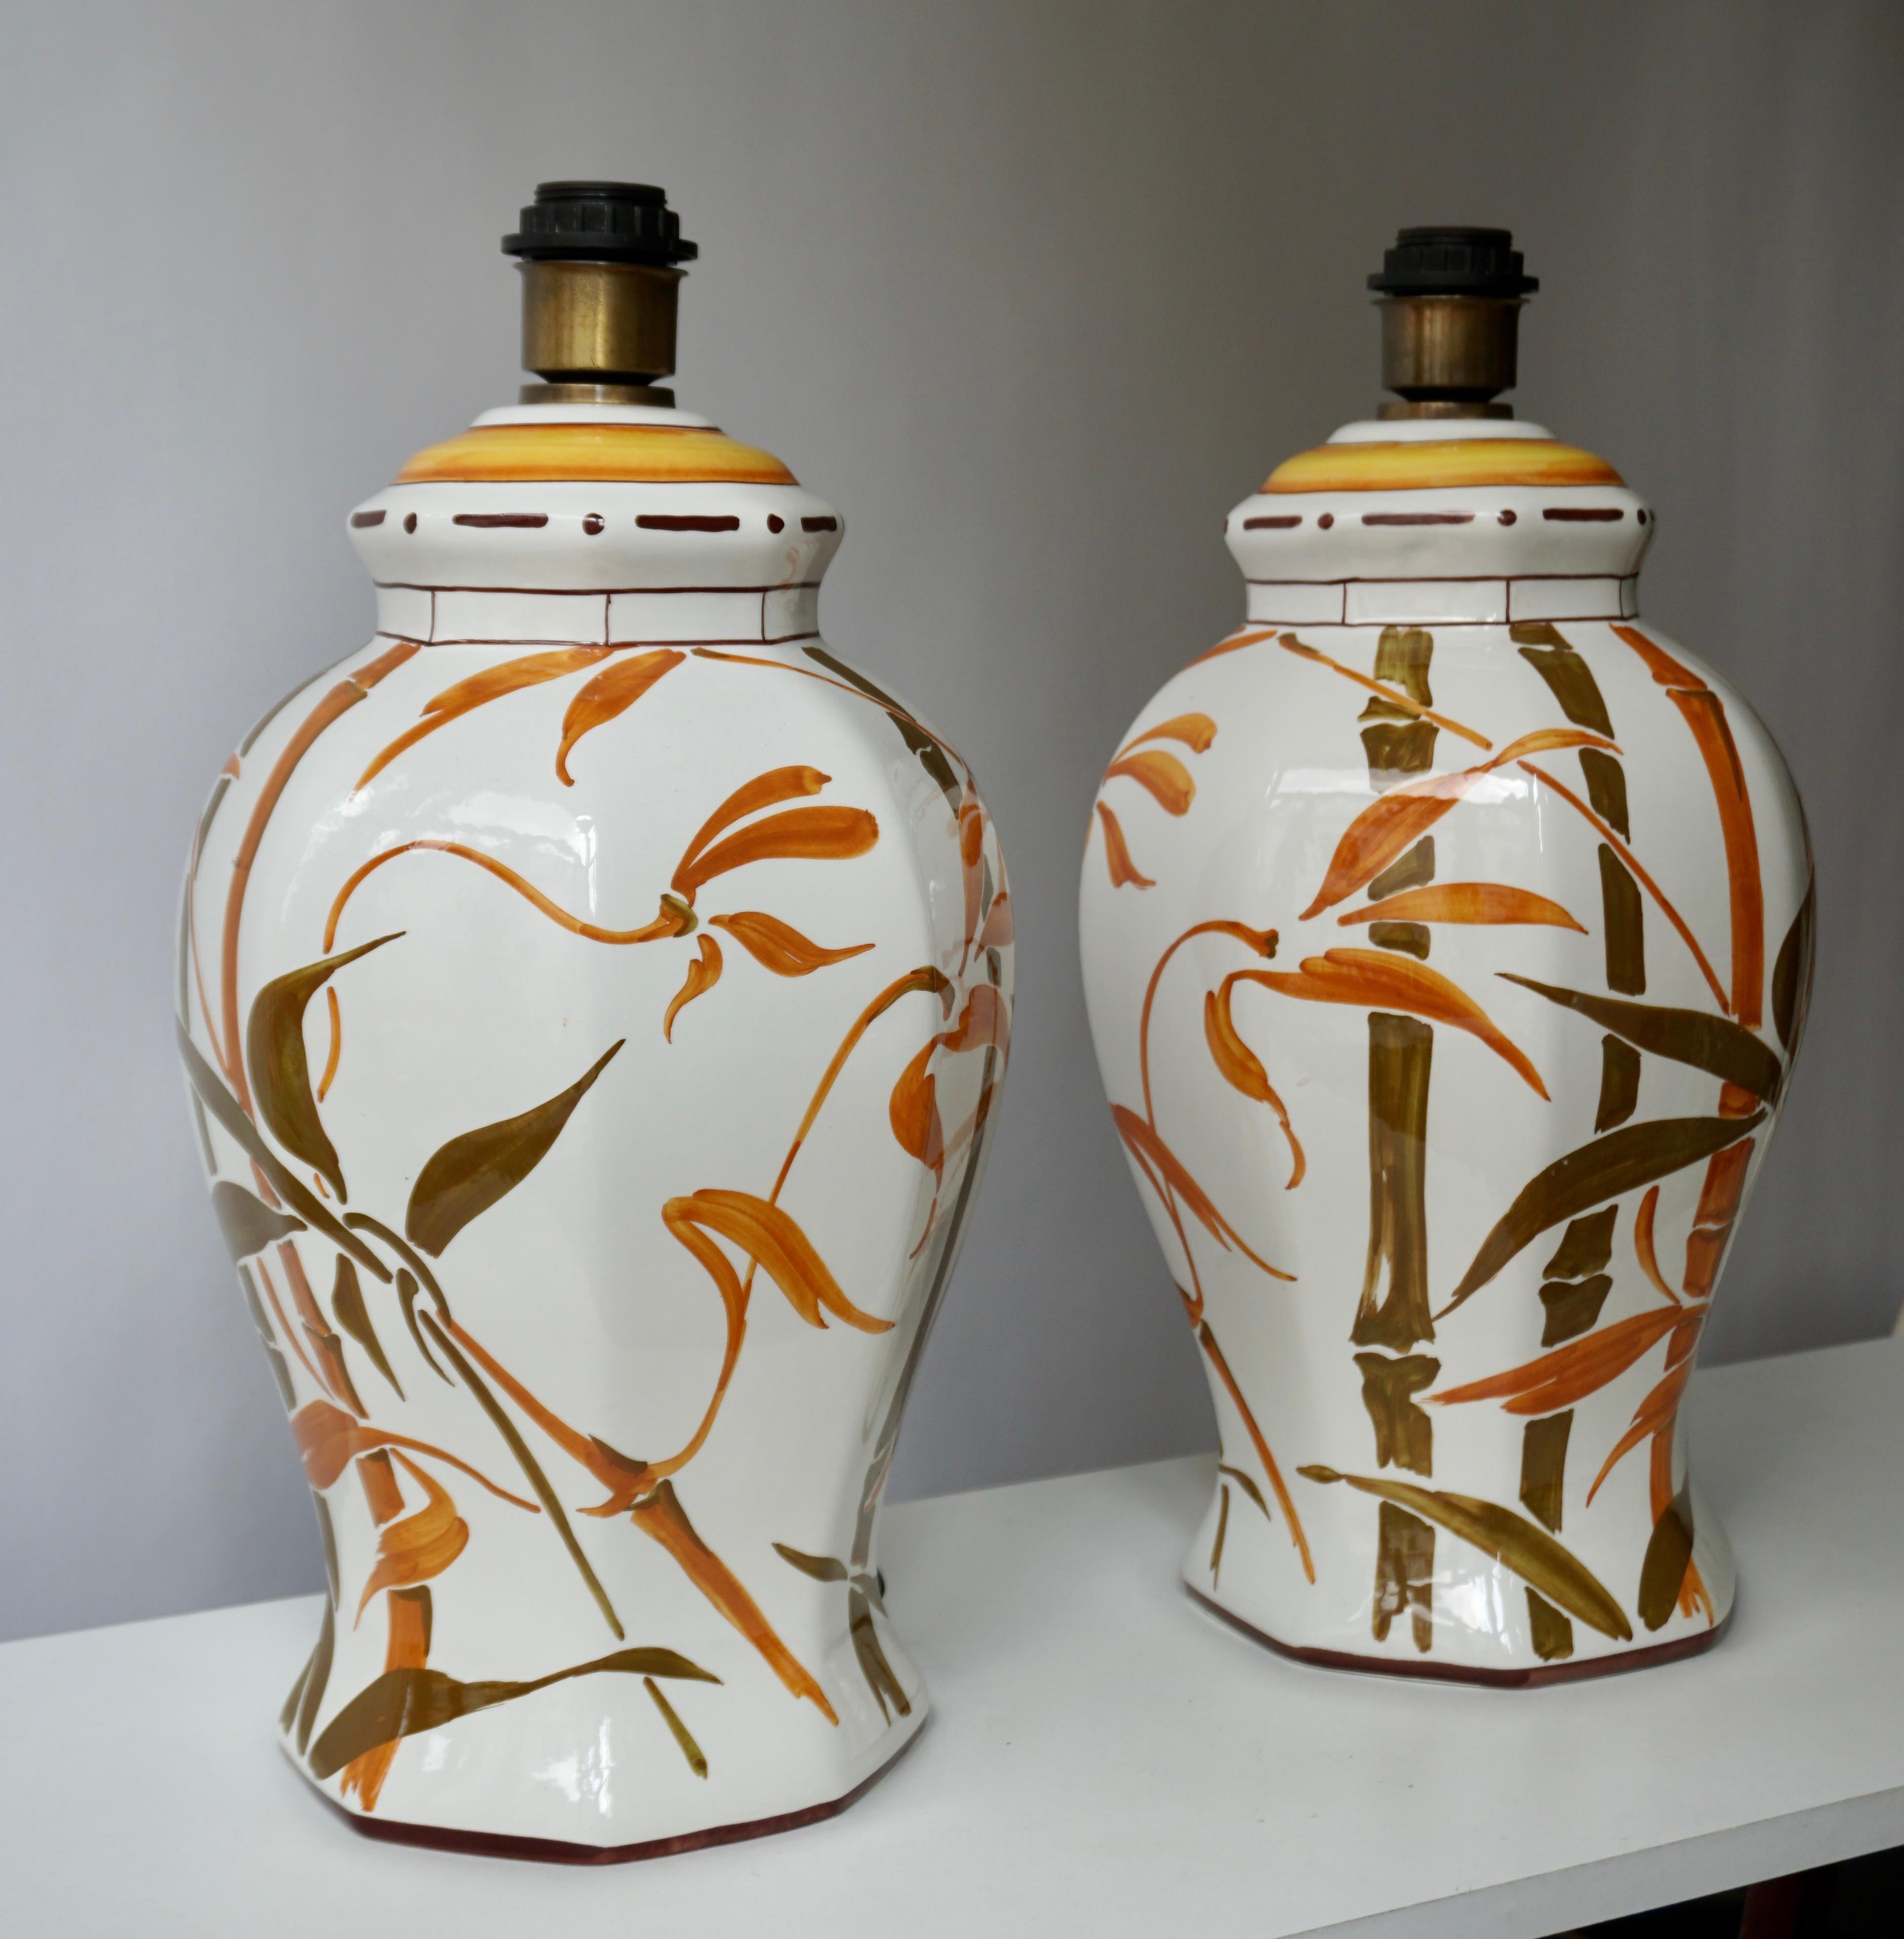 Zwei Keramik-Tischlampen im eleganten Hollywood-Regency-Stil der Jahrhundertmitte mit handgemalten Bambusblättern oder botanischen Motiven auf einer glänzend weißen Glasur. Lampenschirm nicht enthalten.

Jede Lampe kommt mit 1 x E27 / 26